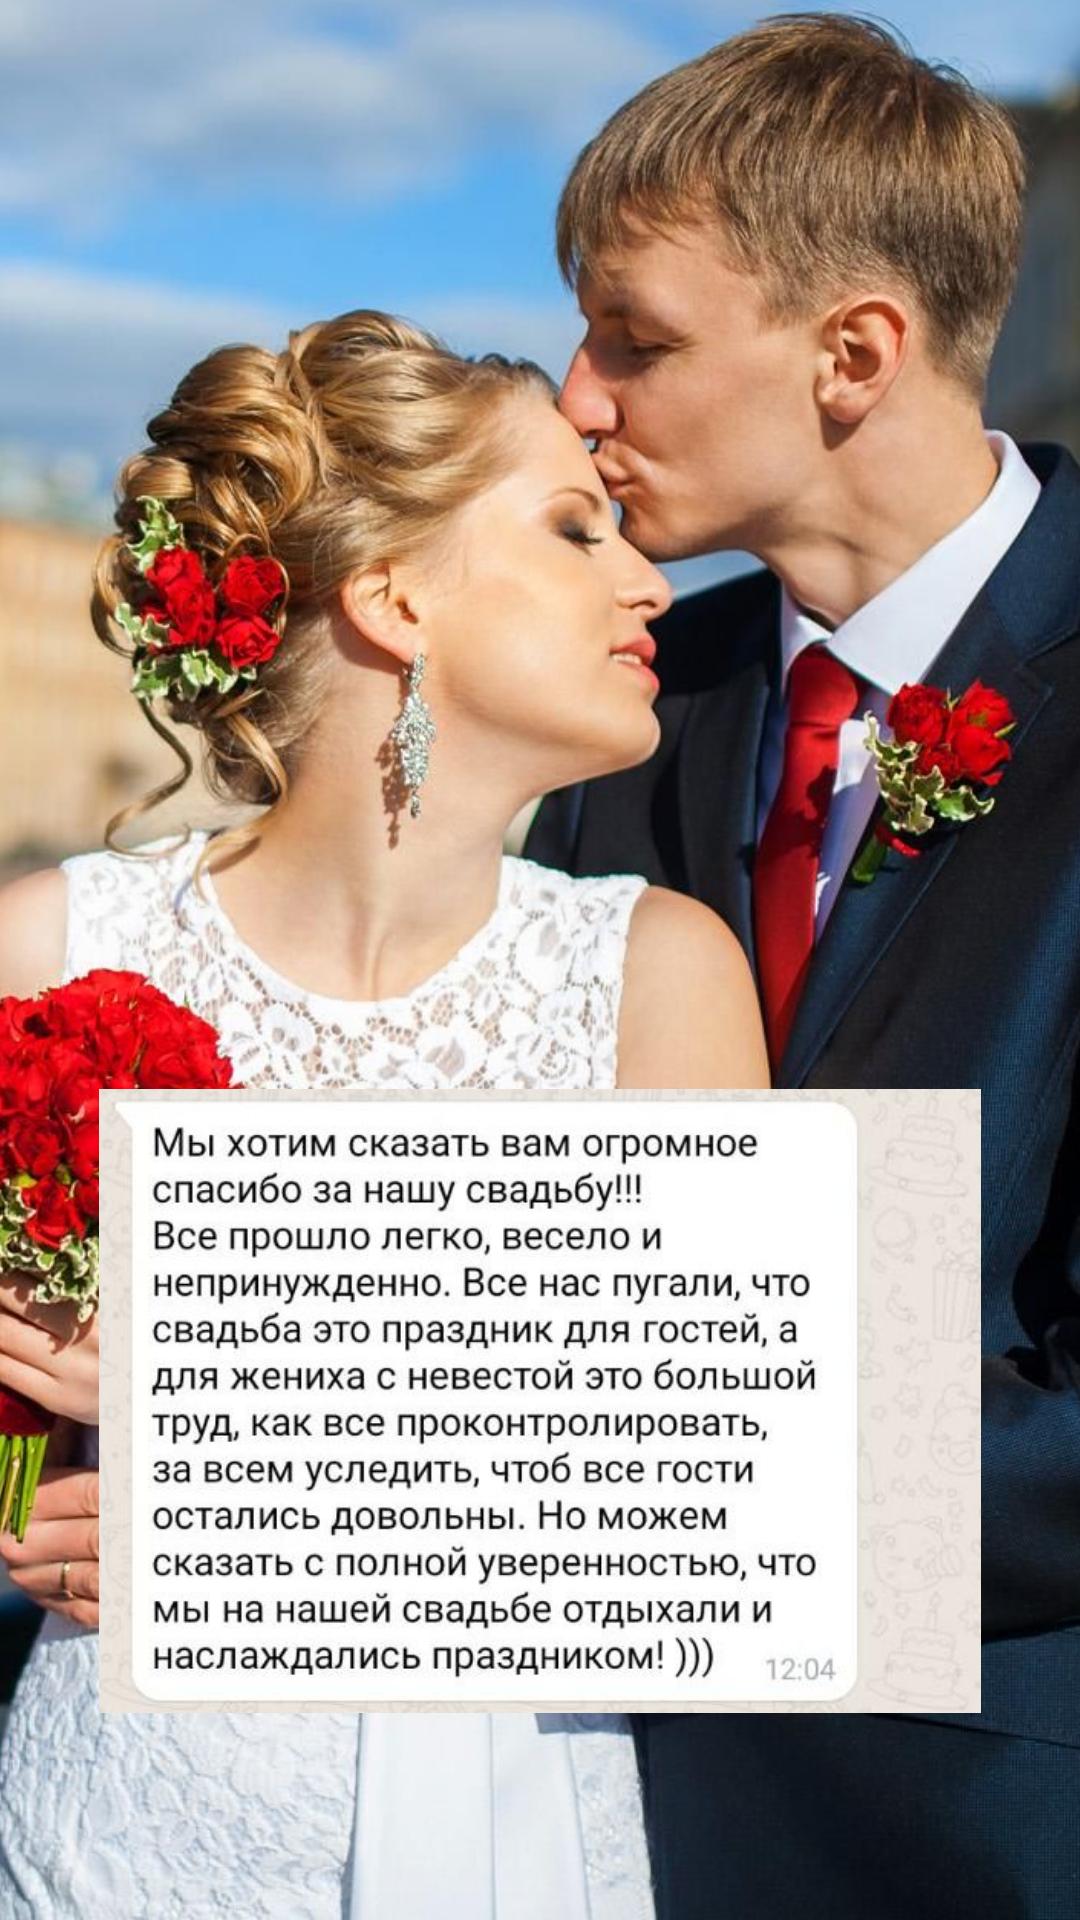 Организация свадьбы в Ярославле
от компании Pandaevent